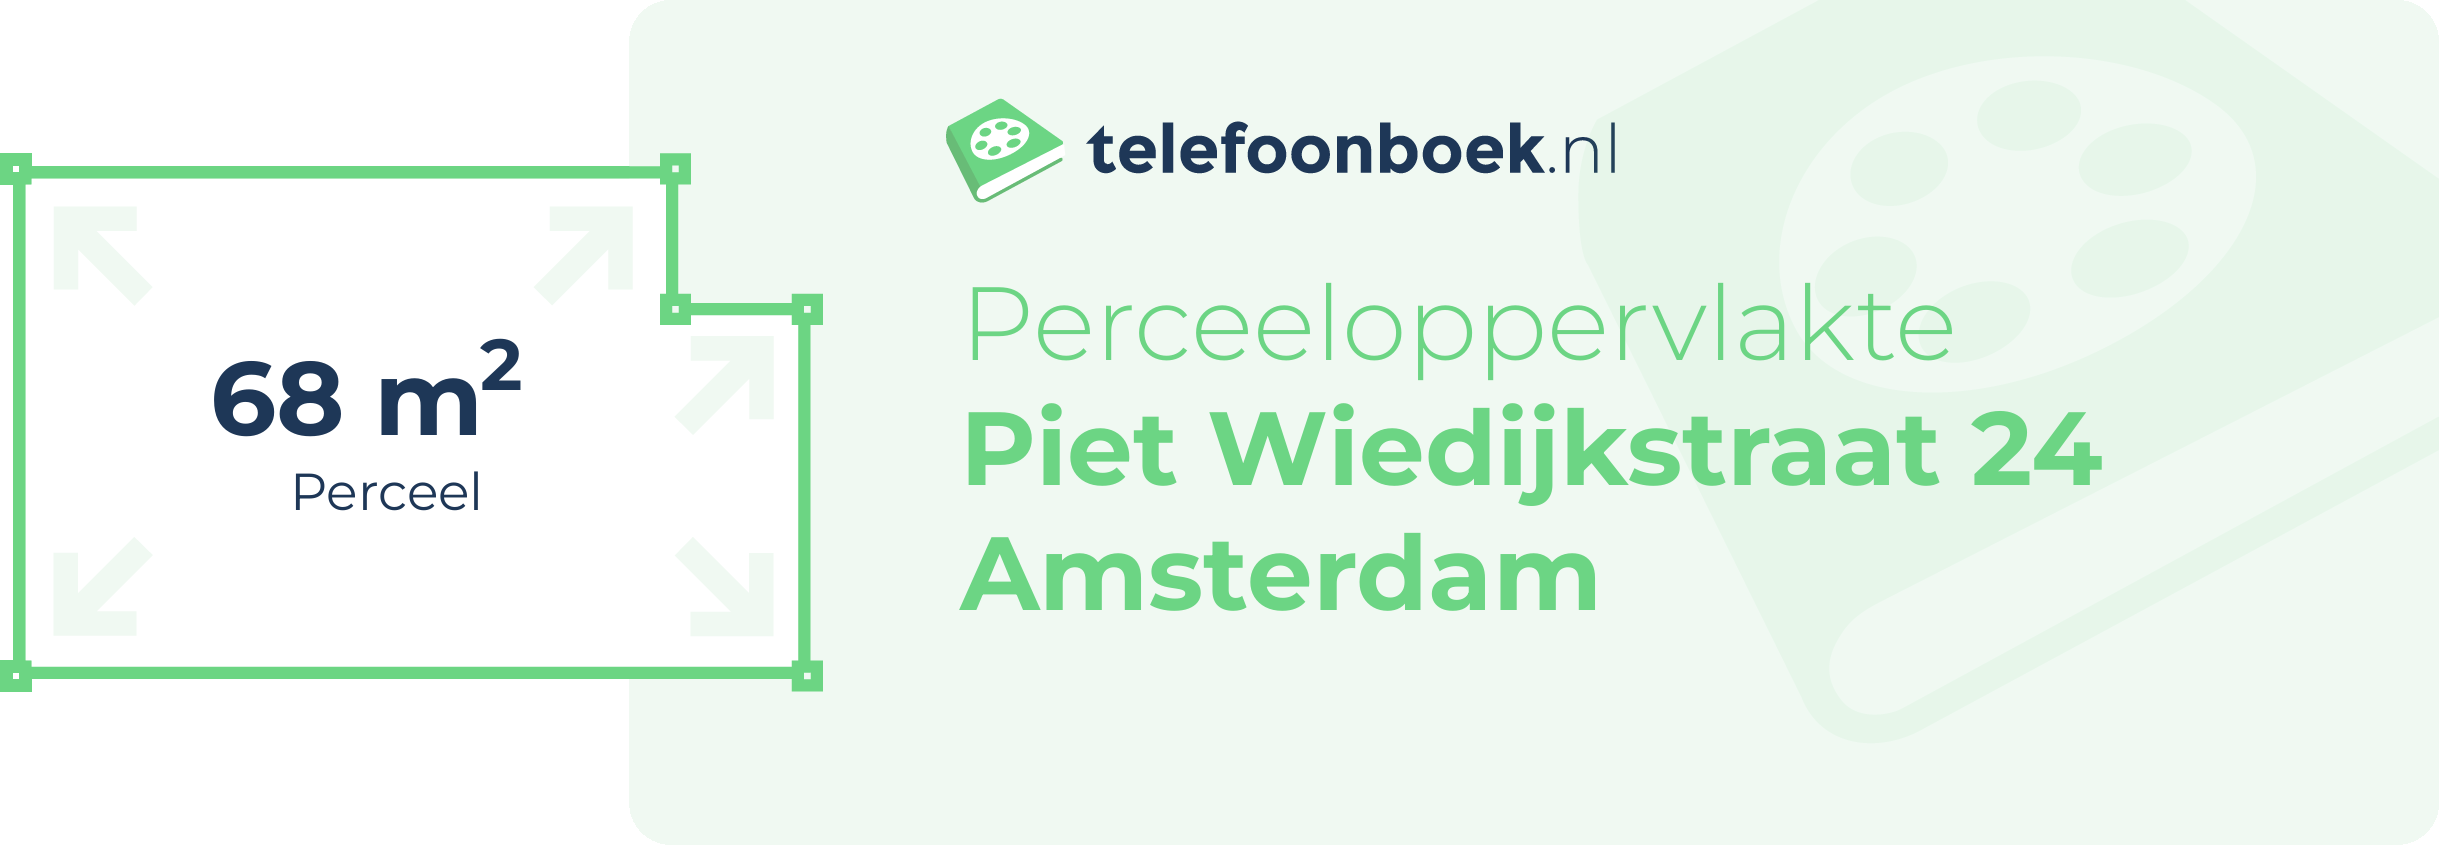 Perceeloppervlakte Piet Wiedijkstraat 24 Amsterdam